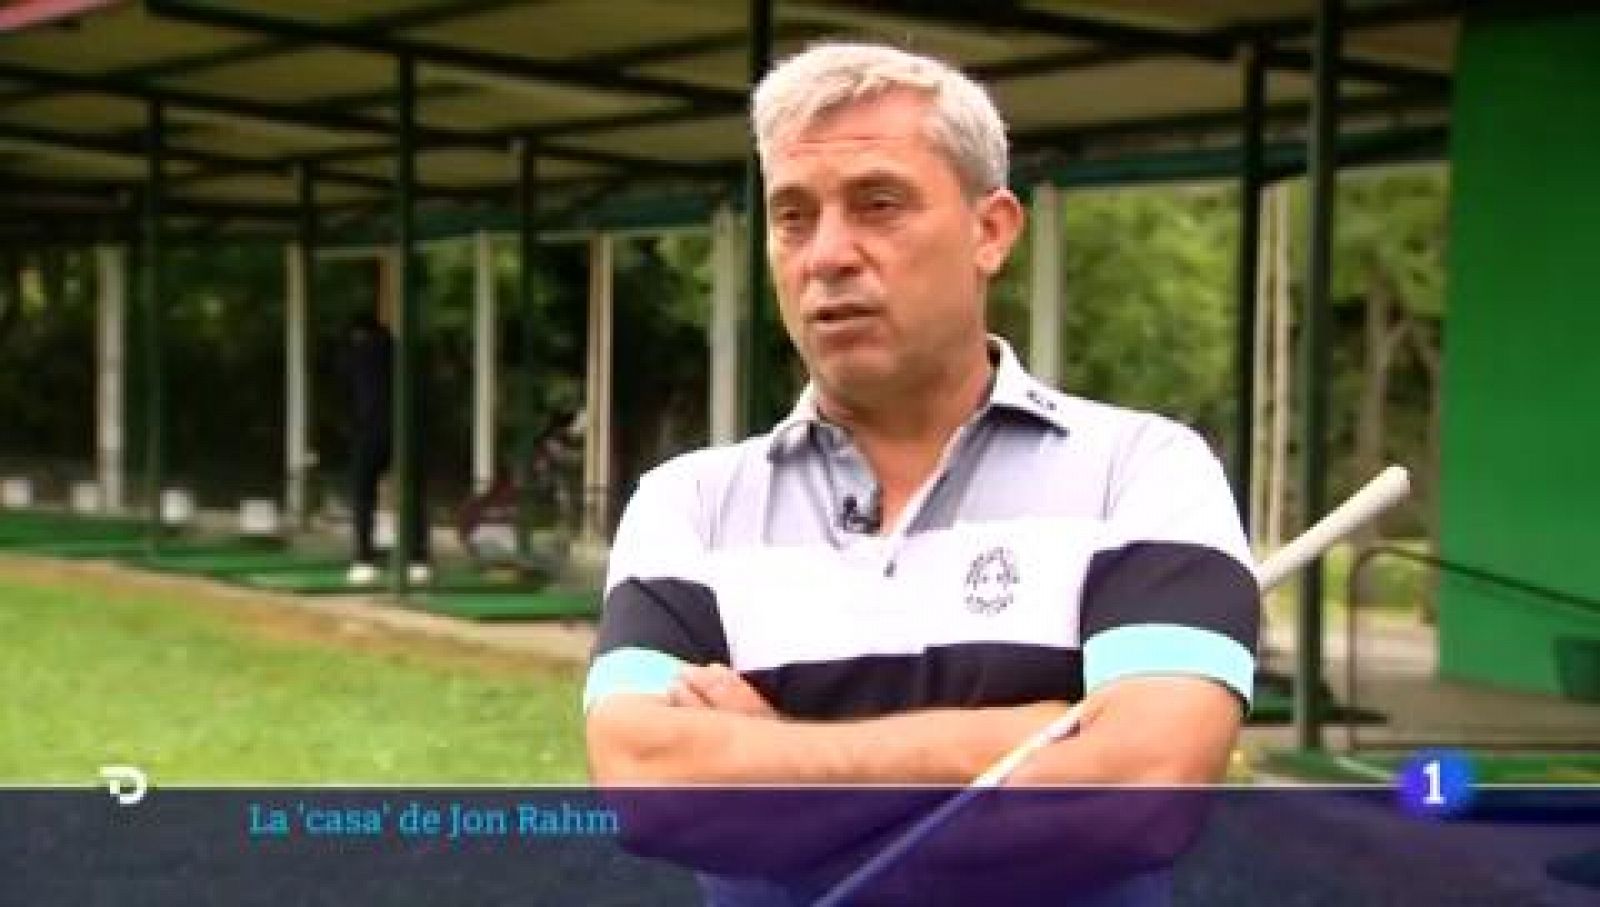 Jon Rahm, el niño que soñaba con ser el mejor golfista del mundo